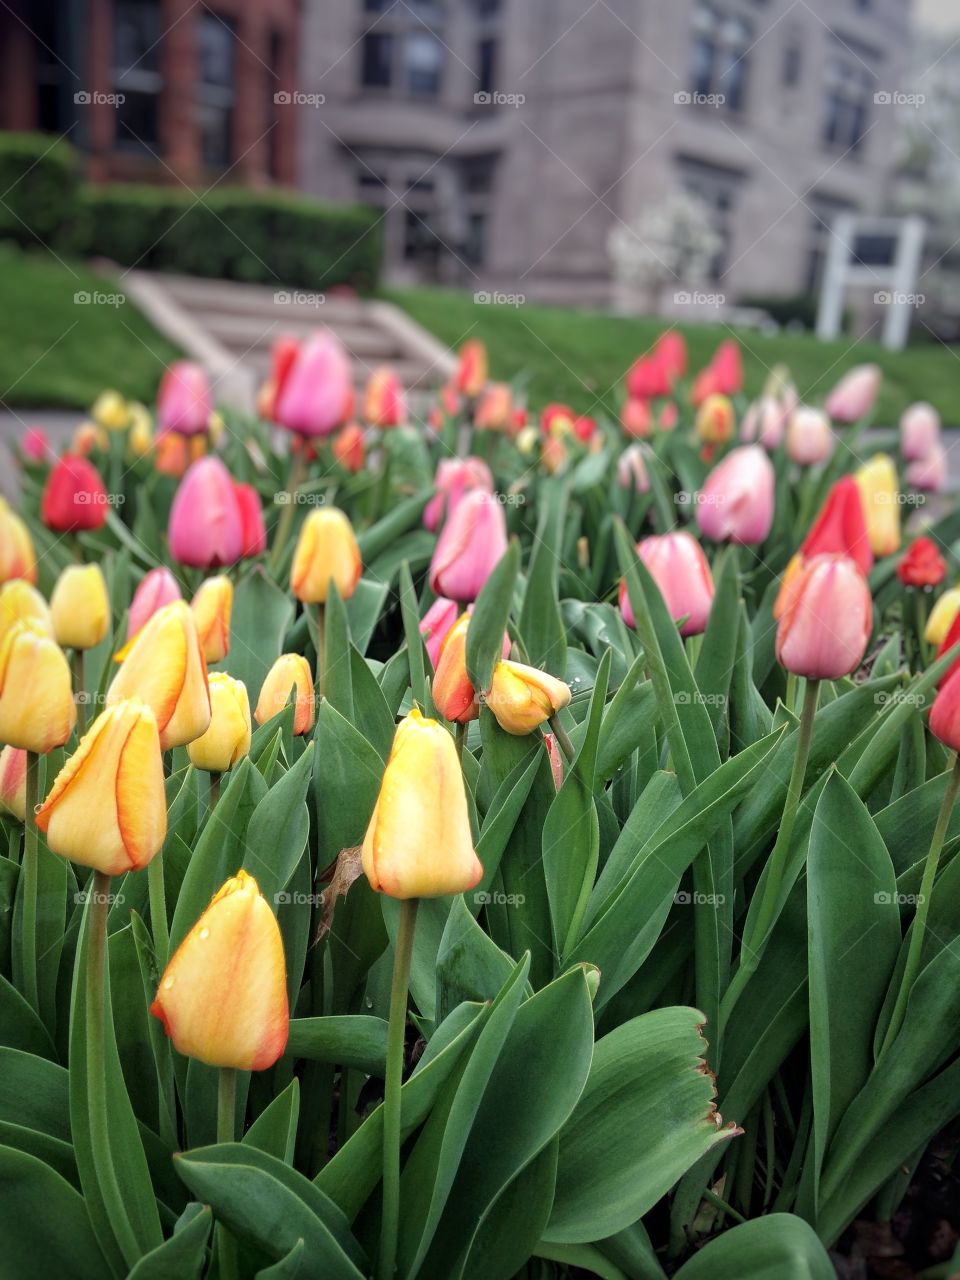 Tulips garden, Minneapolis 